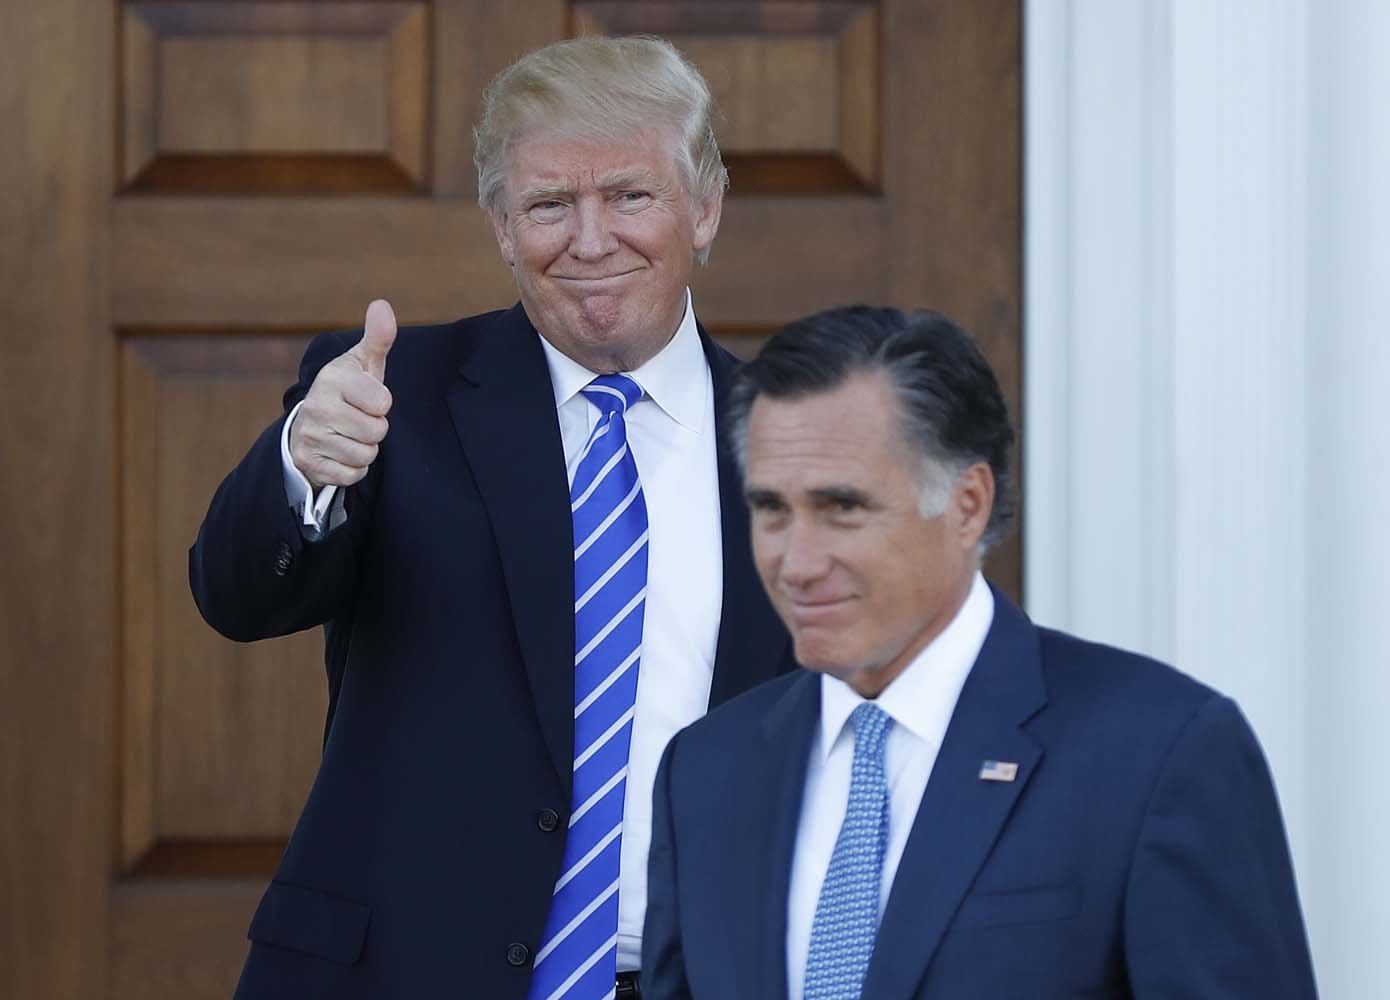 Trump y Romney, rivales que ahora sonríen juntos (fotos)